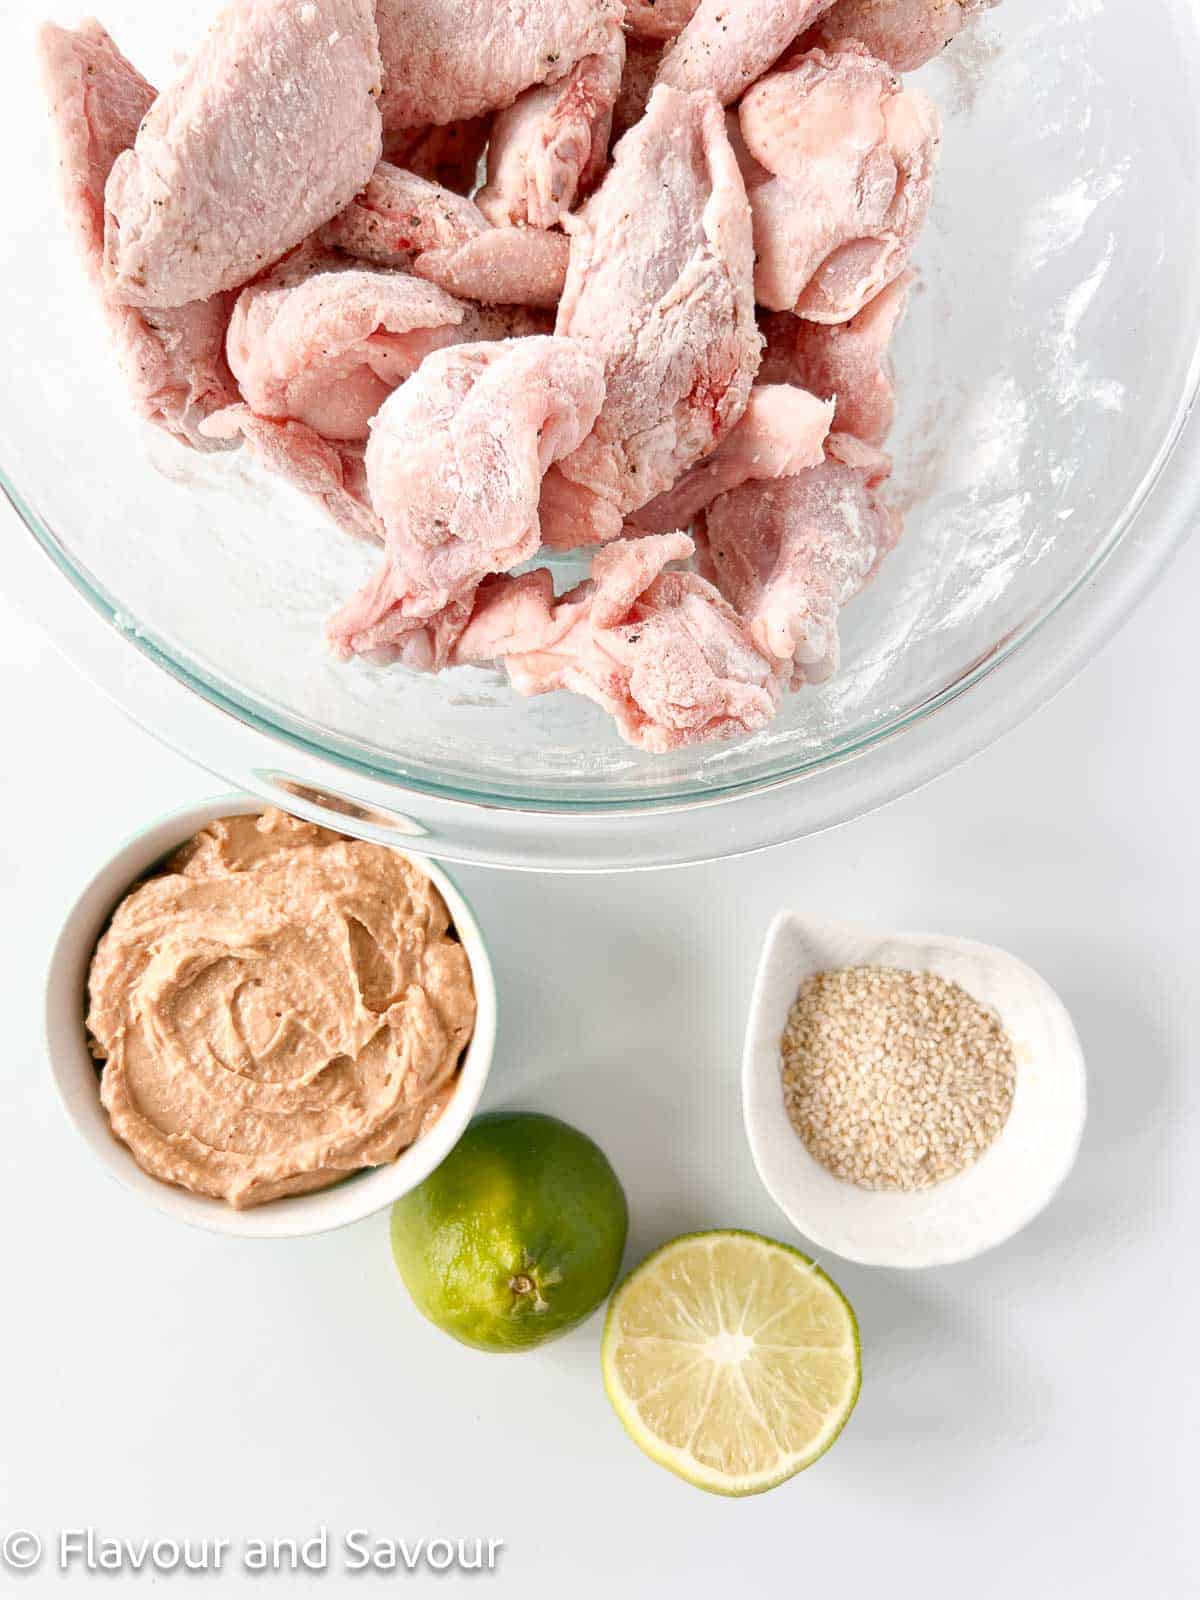 Ingredients for Air Fryer Thai Peanut Chicken Wings: wings, peanut sauce, sesame seeds, lime.